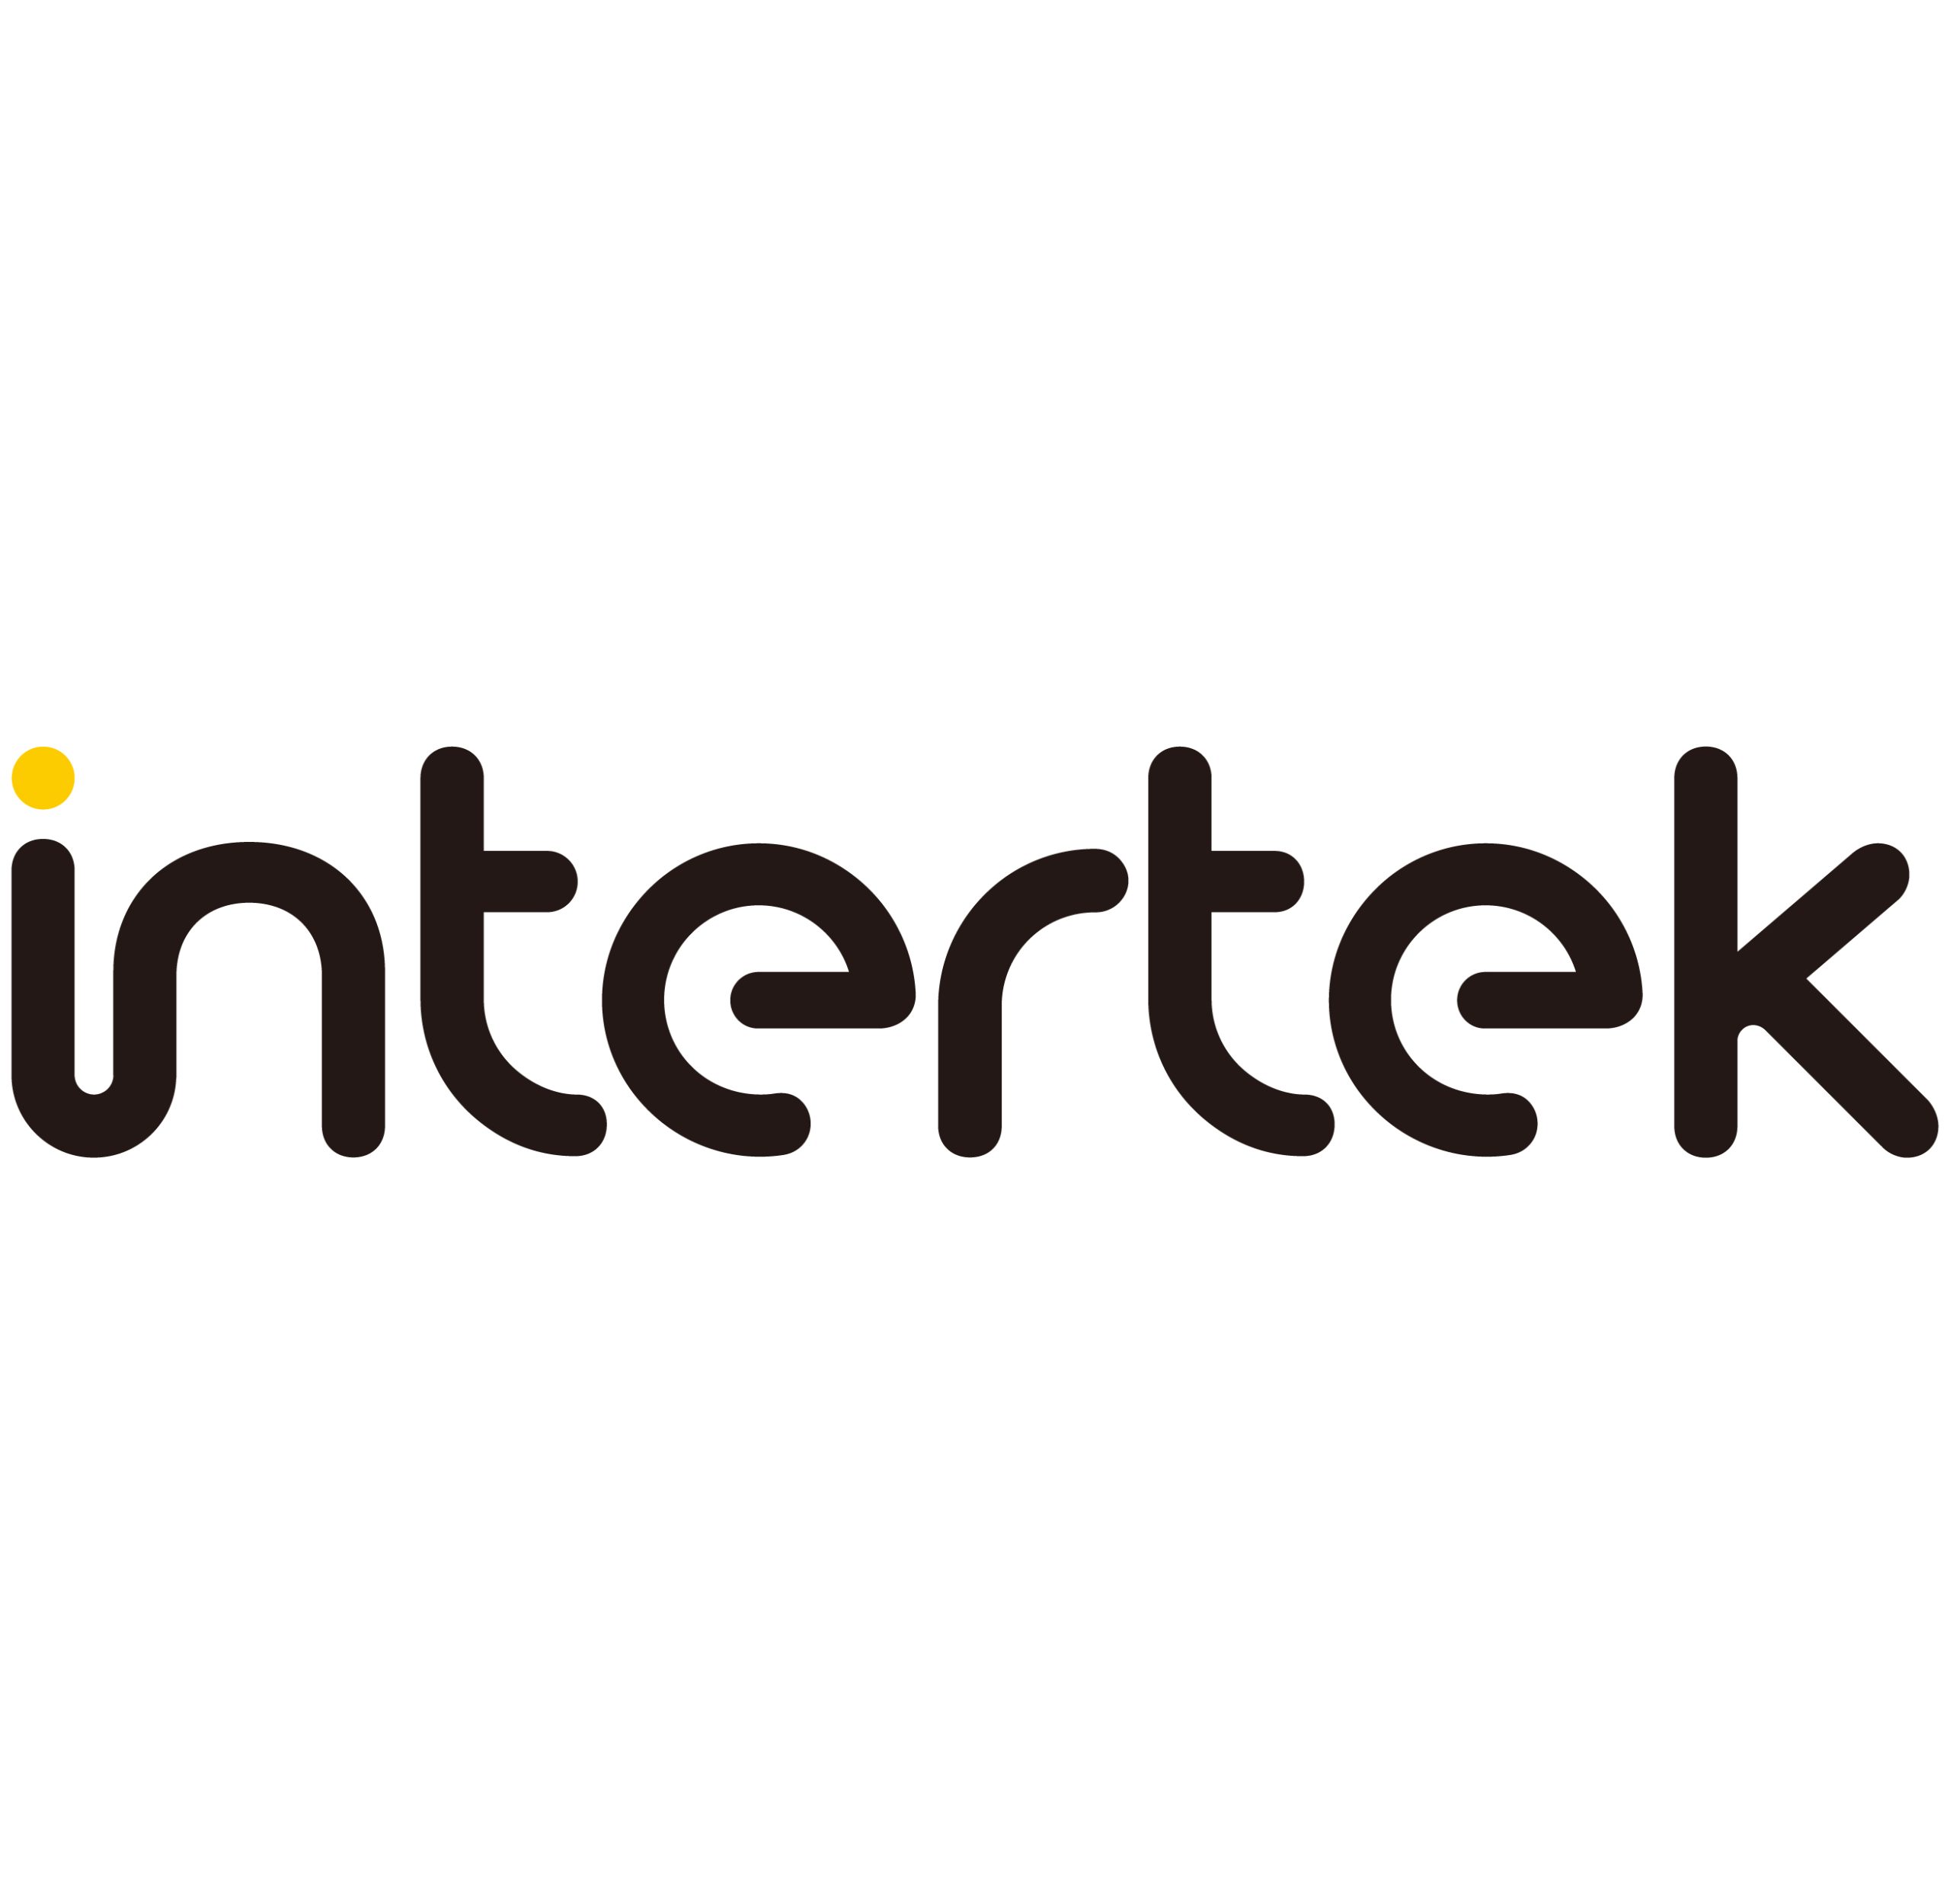 intertek